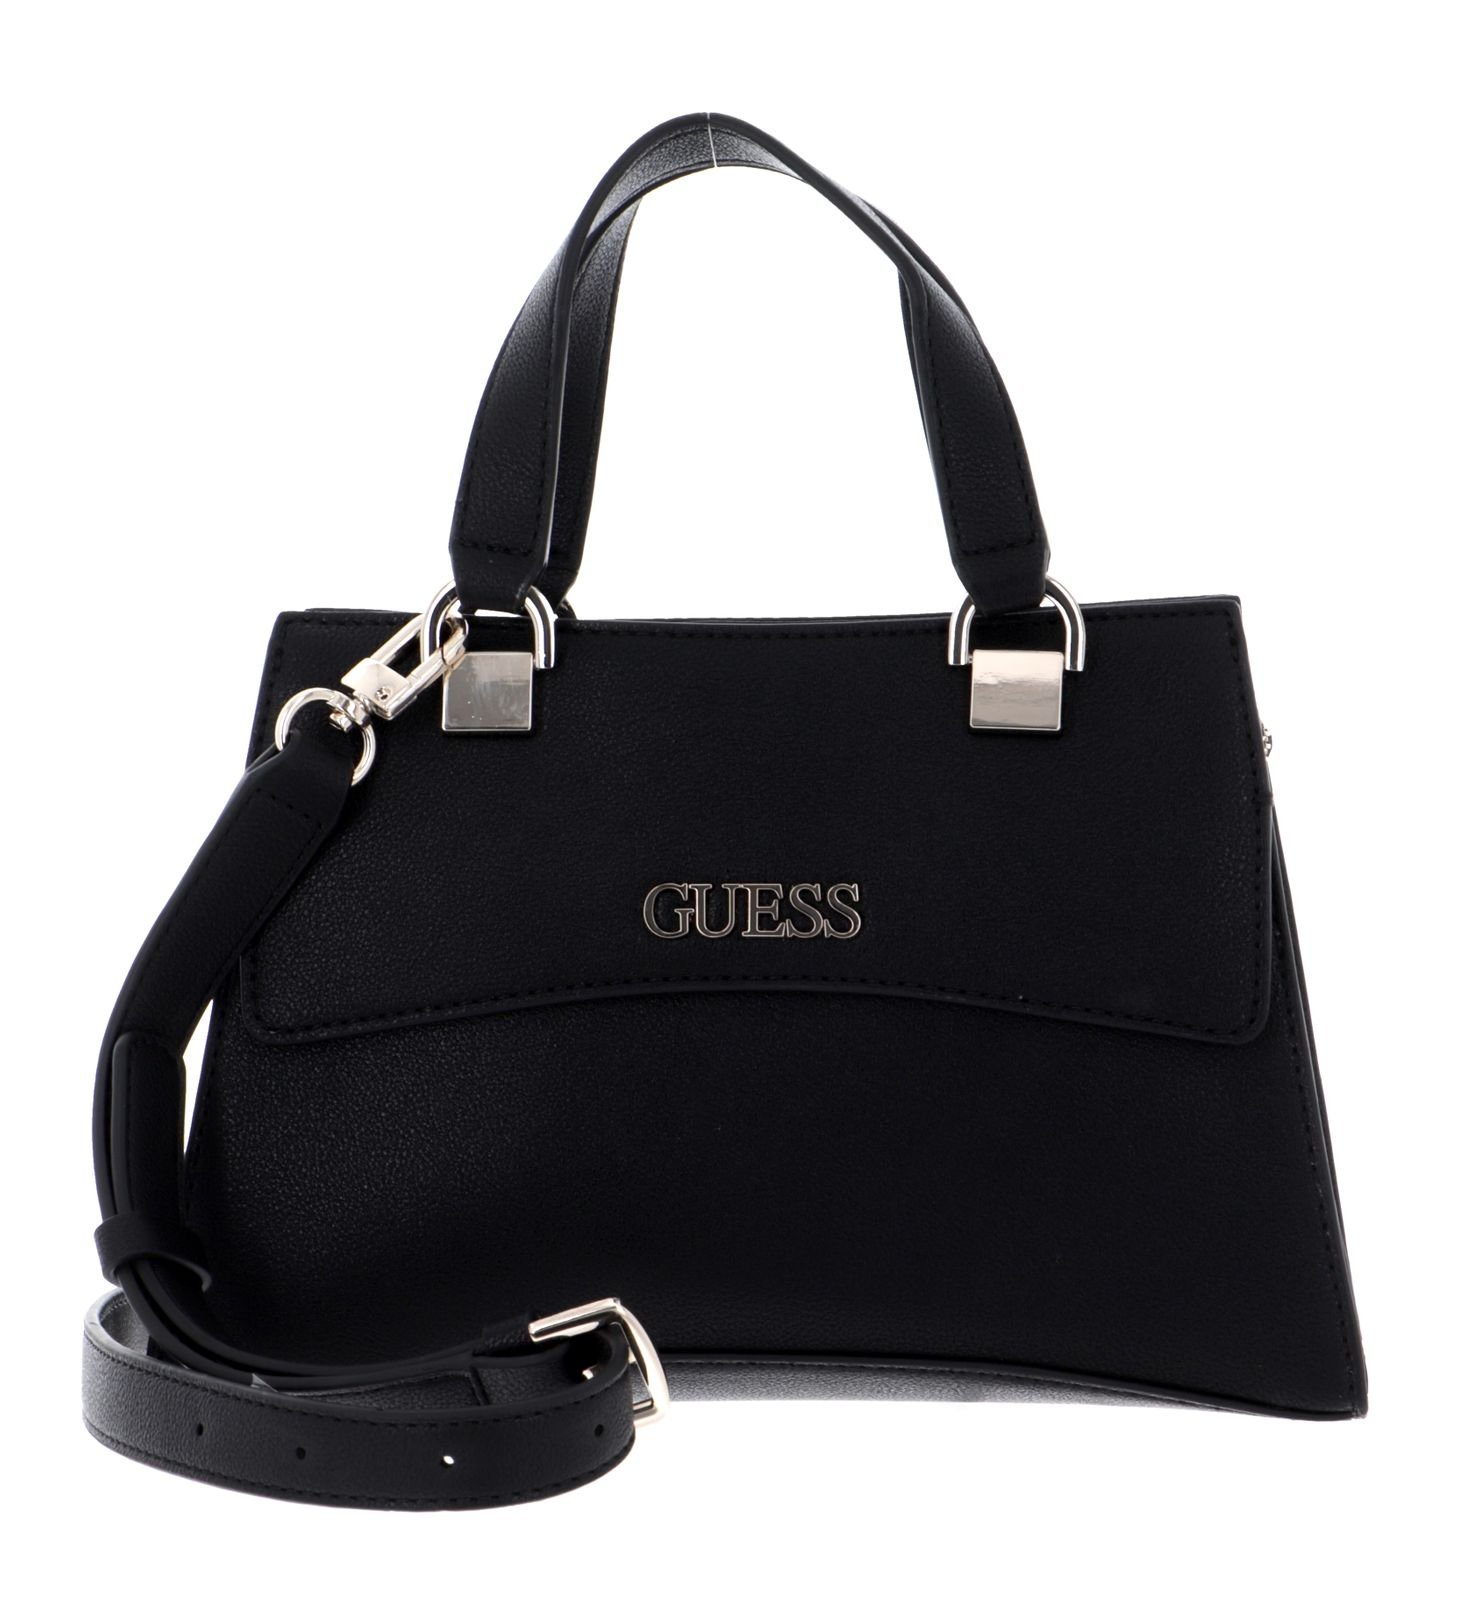 Guess Handtasche »Dalma« online kaufen | OTTO